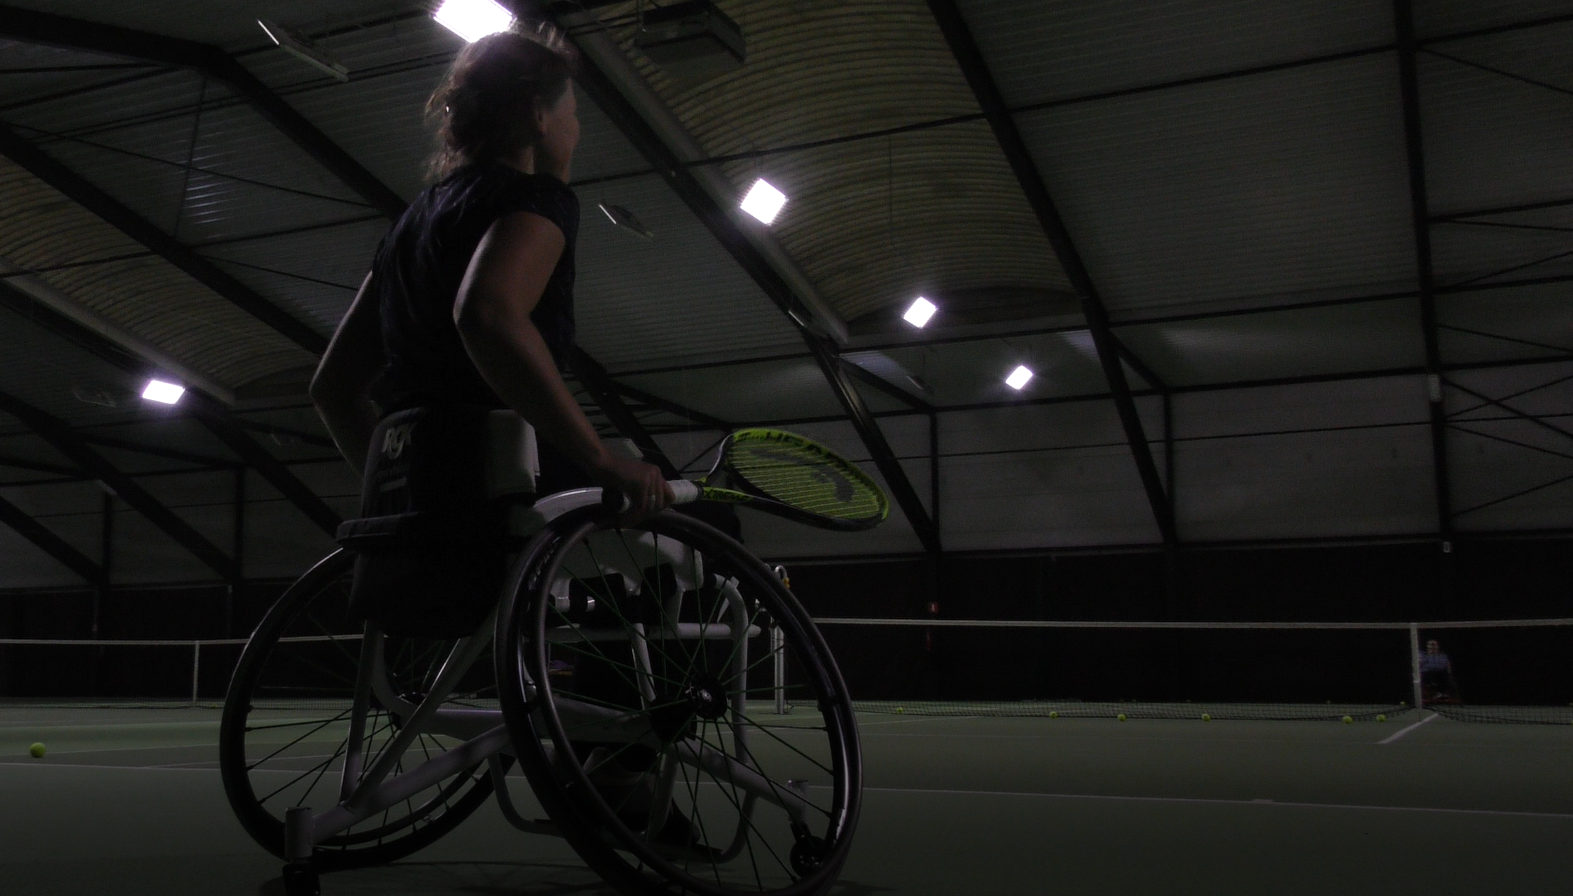 Ze bieden rolstoeltennis aan; er is een trainer die gespecialiseerd is in het trainen van mensen in een rolstoel, er is een rolstoel lift en er zijn sport rolstoelen beschikbaar.